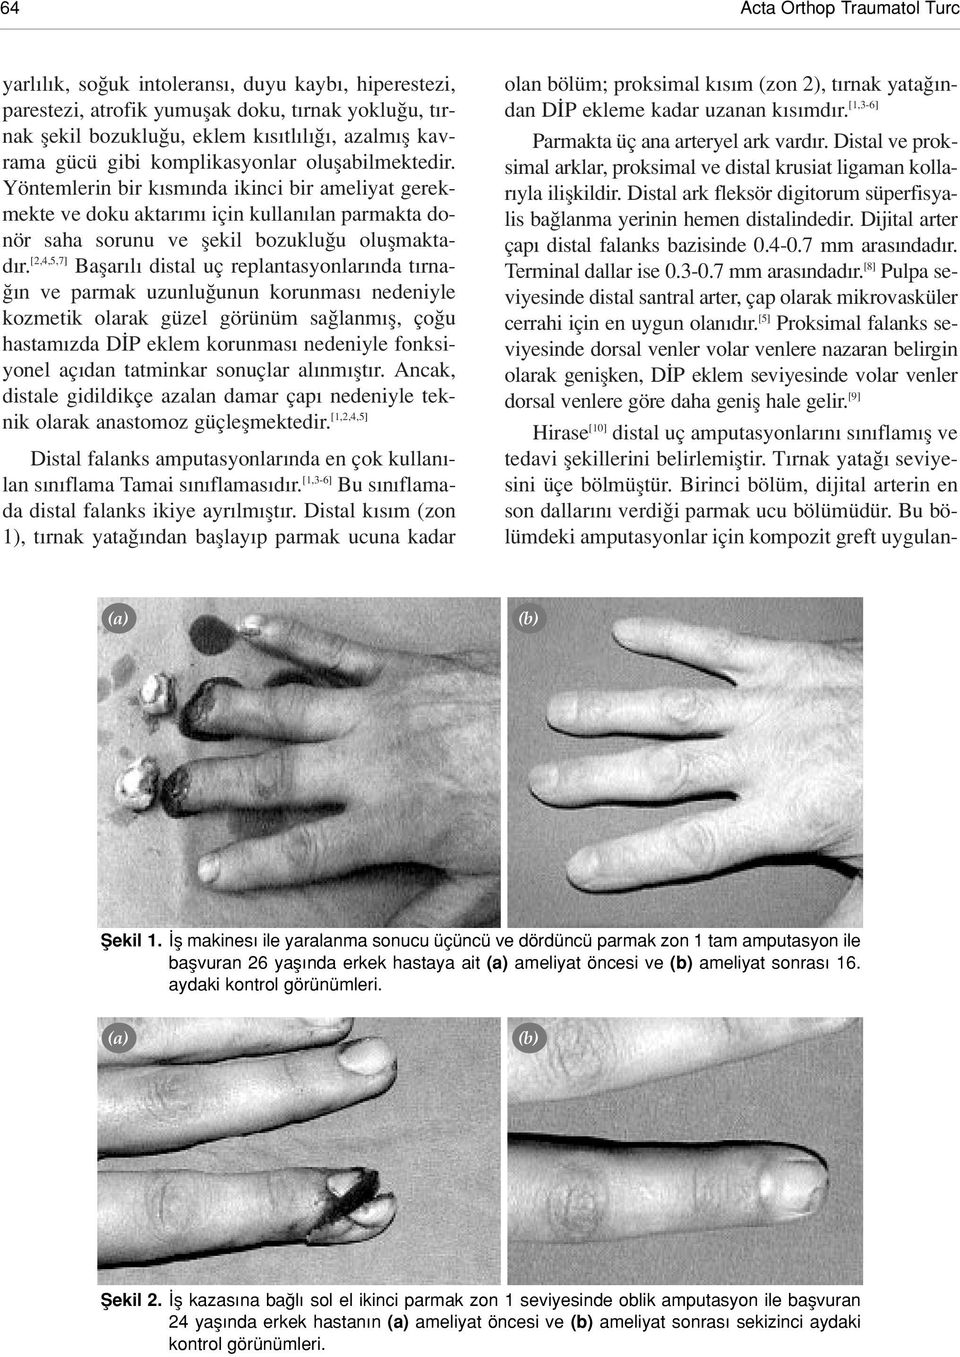 [2,4,5,7] Baflar l distal uç replantasyonlar nda t rna- n ve parmak uzunlu unun korunmas nedeniyle kozmetik olarak güzel görünüm sa lanm fl, ço u hastam zda D P eklem korunmas nedeniyle fonksiyonel